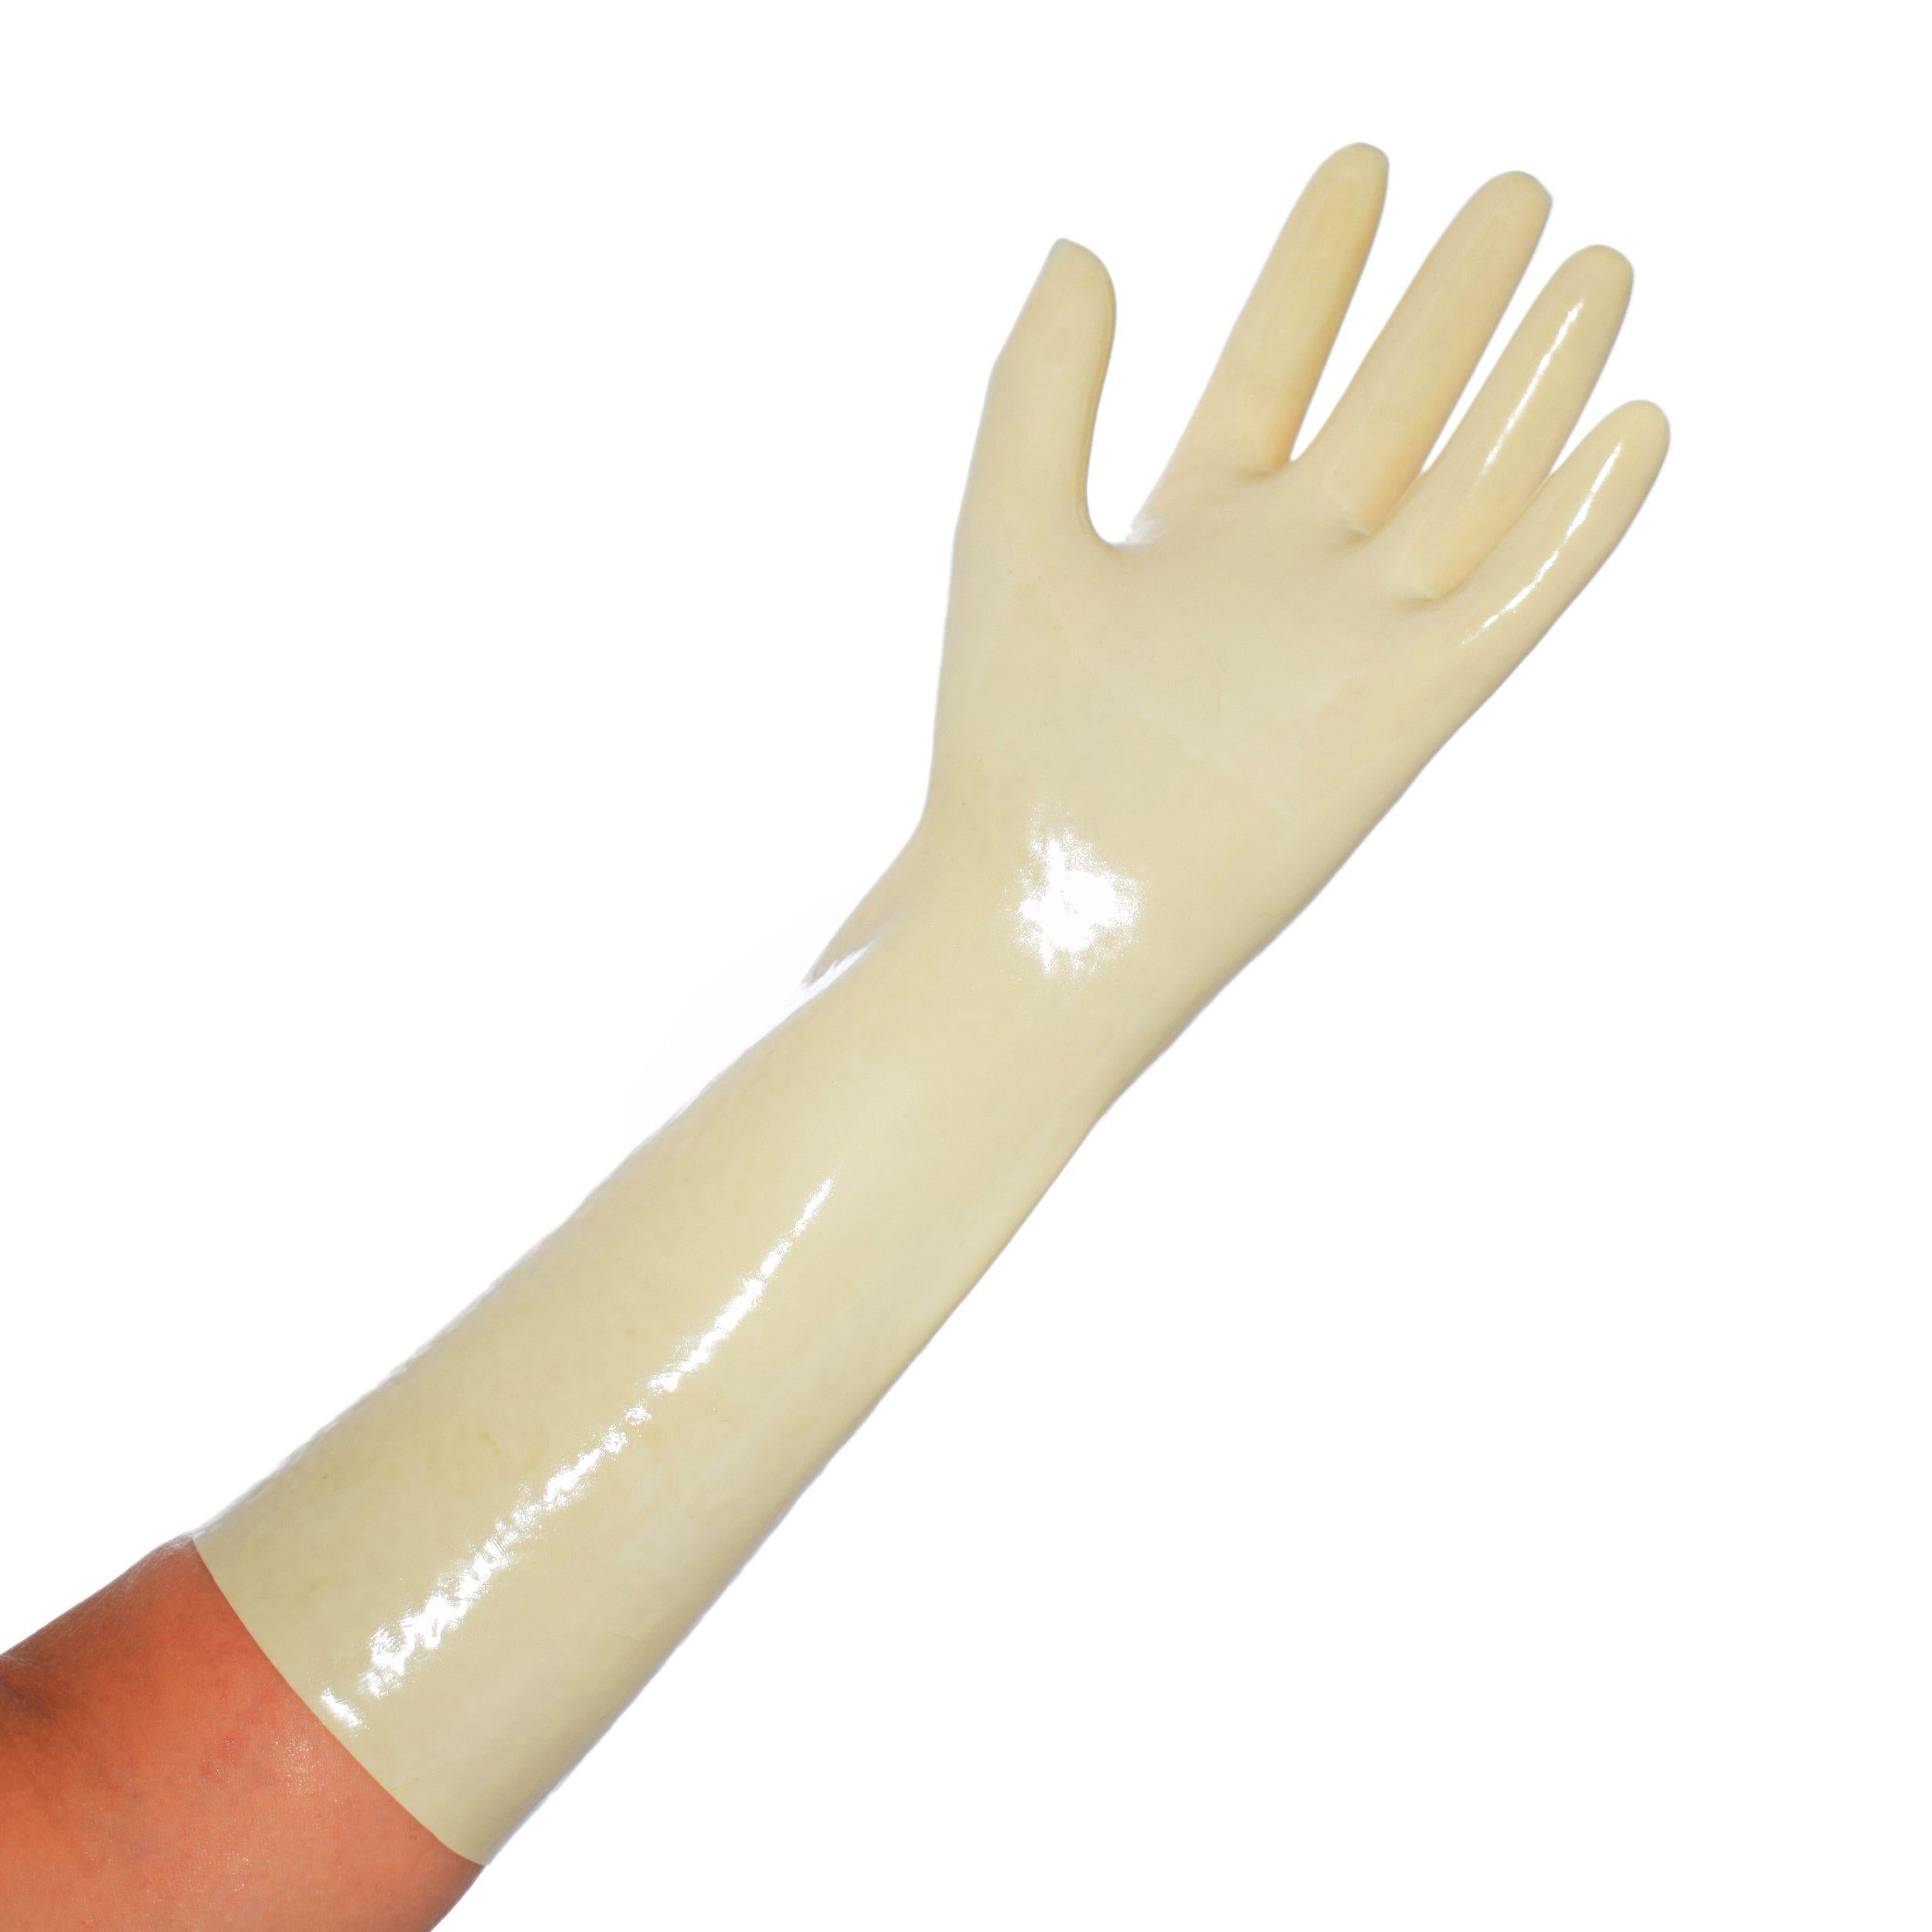 Rubberfashion Latex Handschuhe kurz - Sexy Rubber Gloves - kurze Latexhandschuhe bis Handgelenk für Damen und Herren